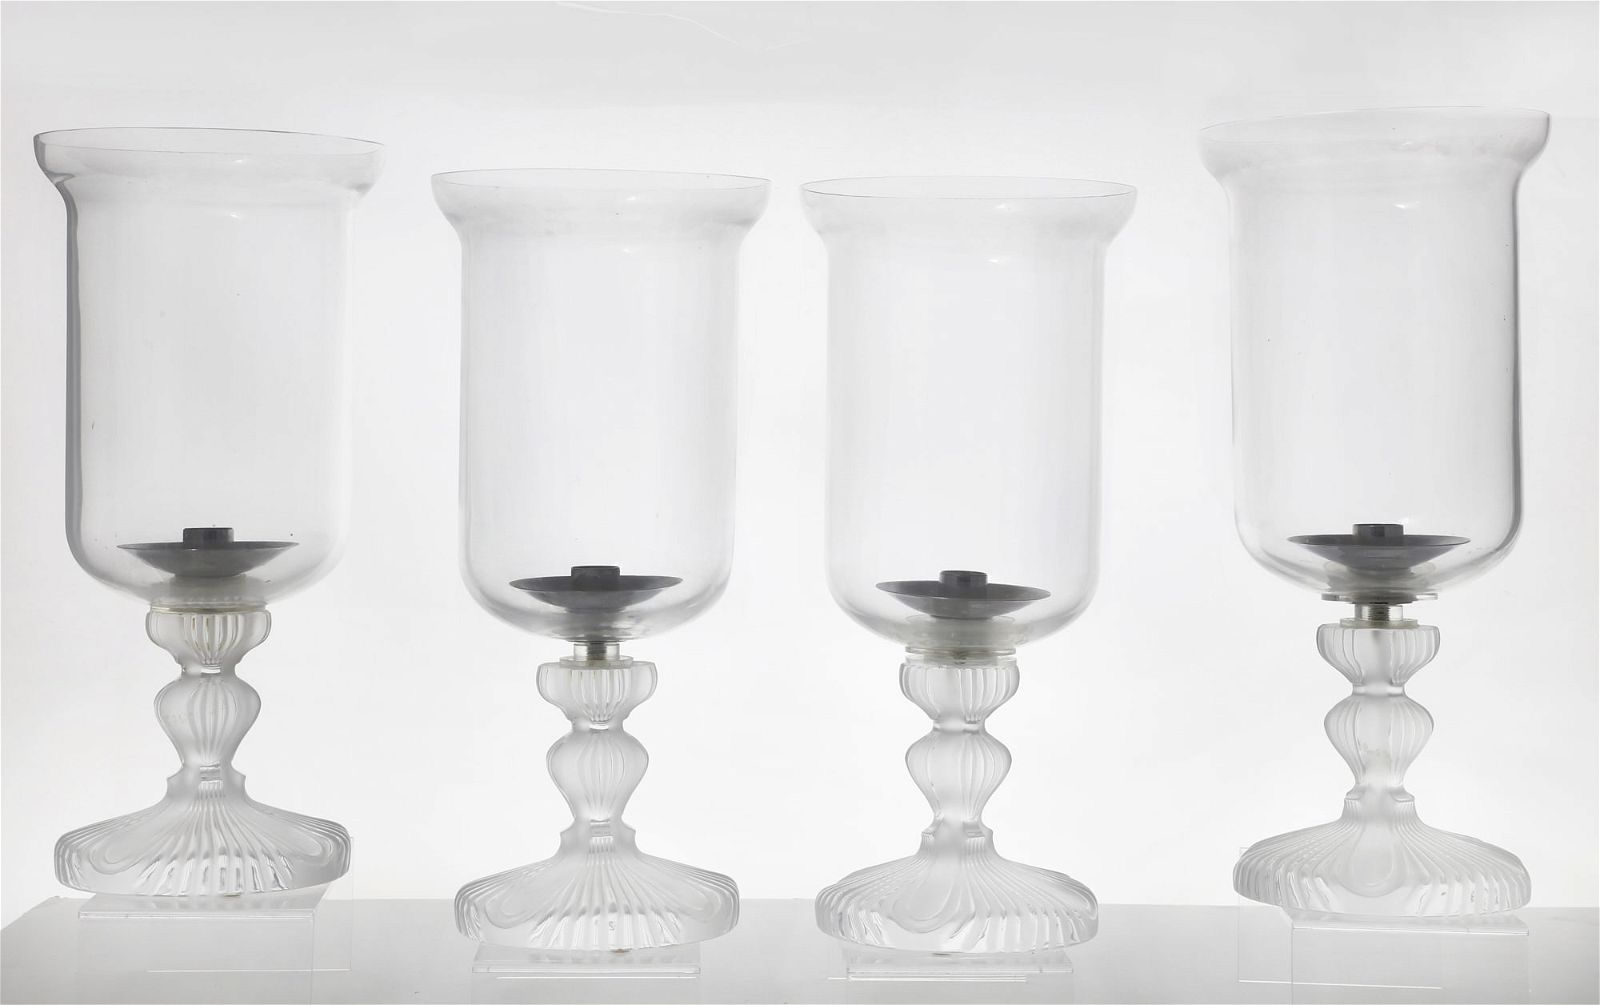 FOUR LALIQUE GLASS HURRICANE LAMPSA 2fb42a7